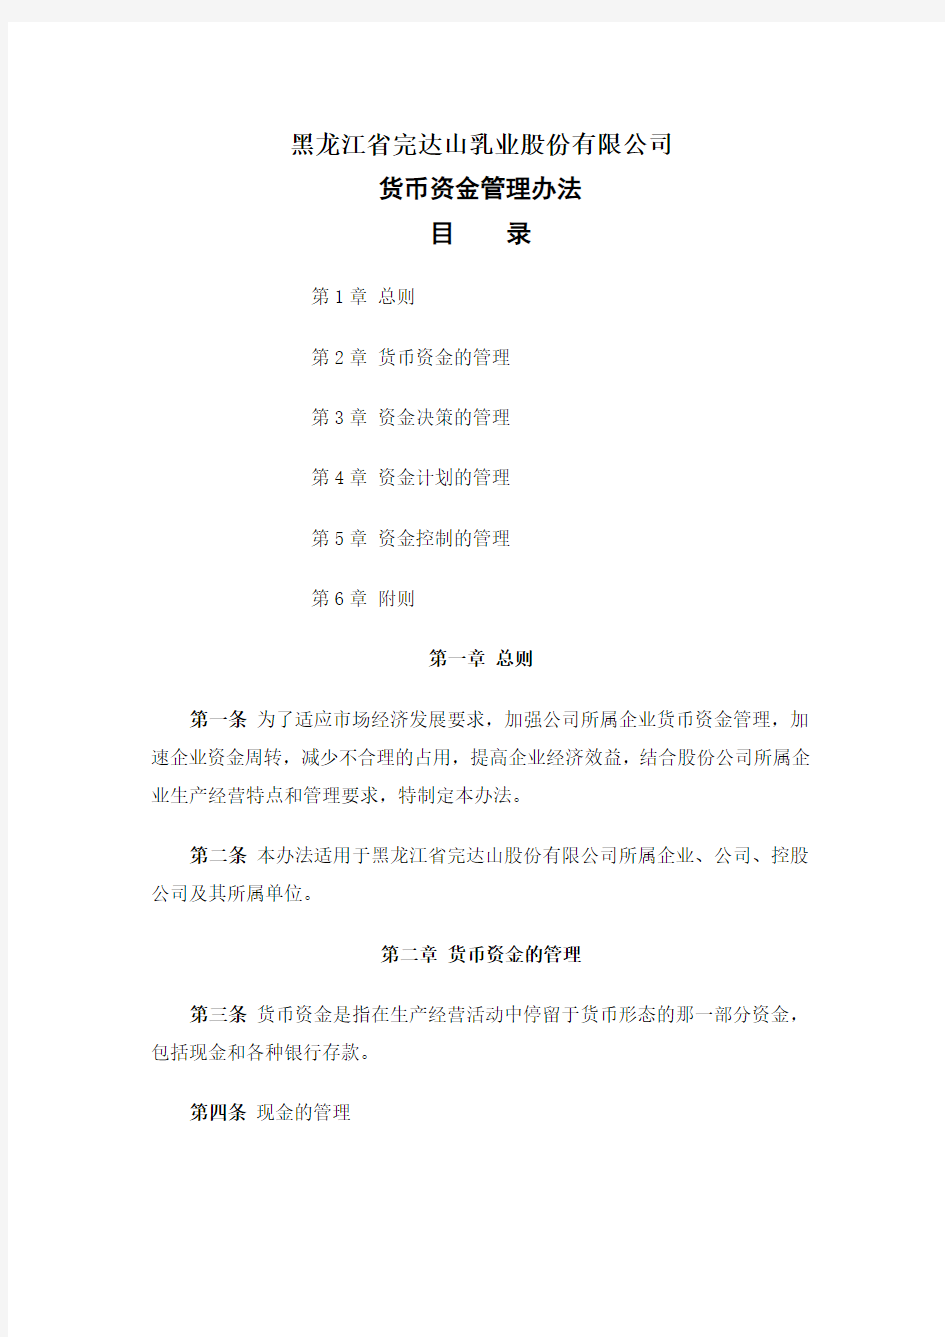 黑龙江省完达山乳业股份有限公司货币资金管理办法